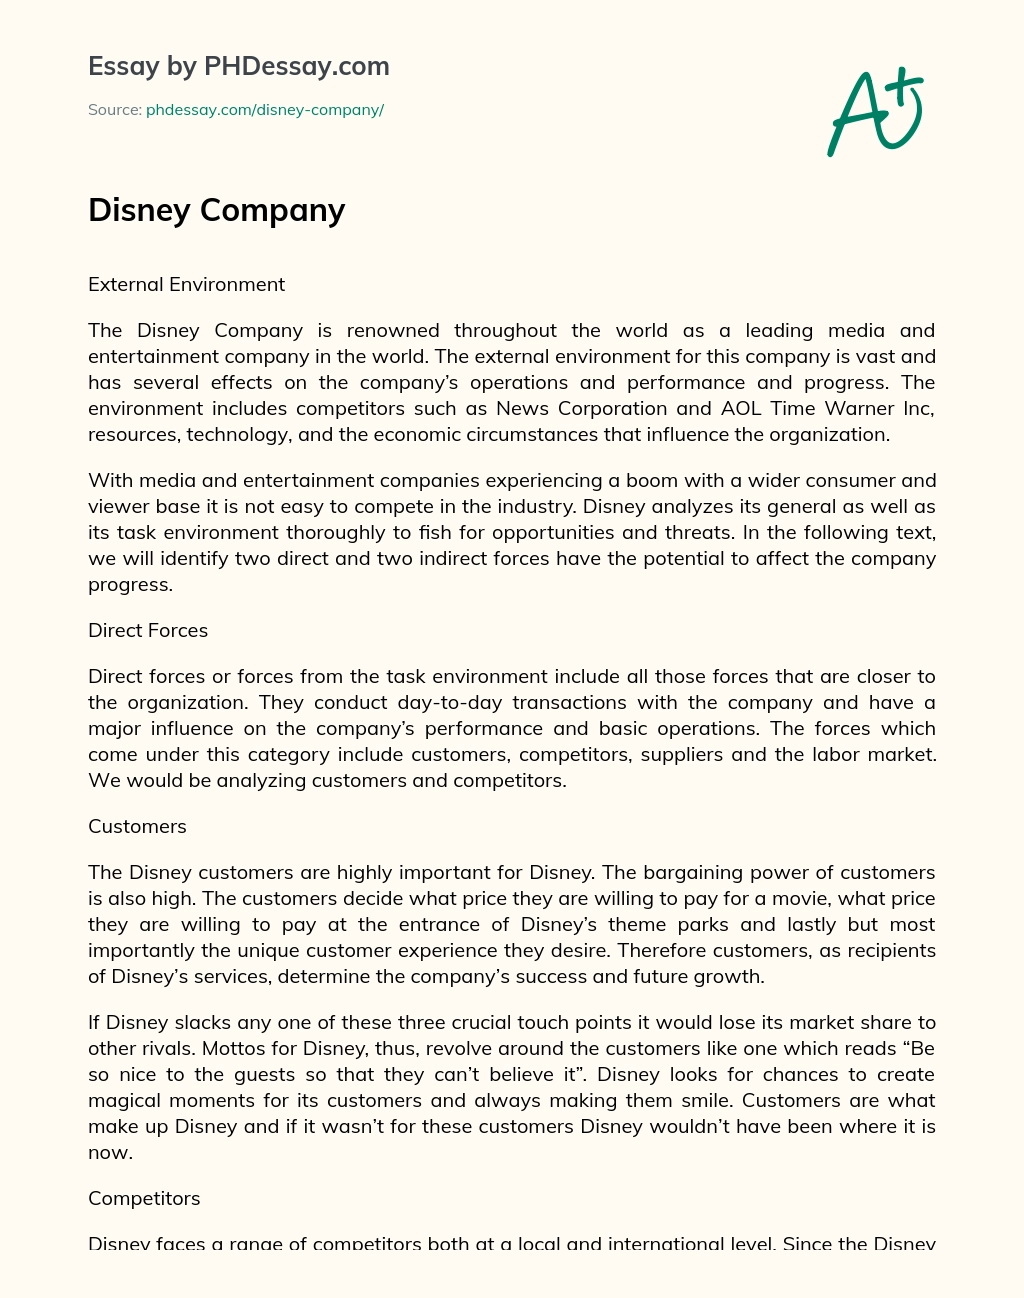 Disney Company essay